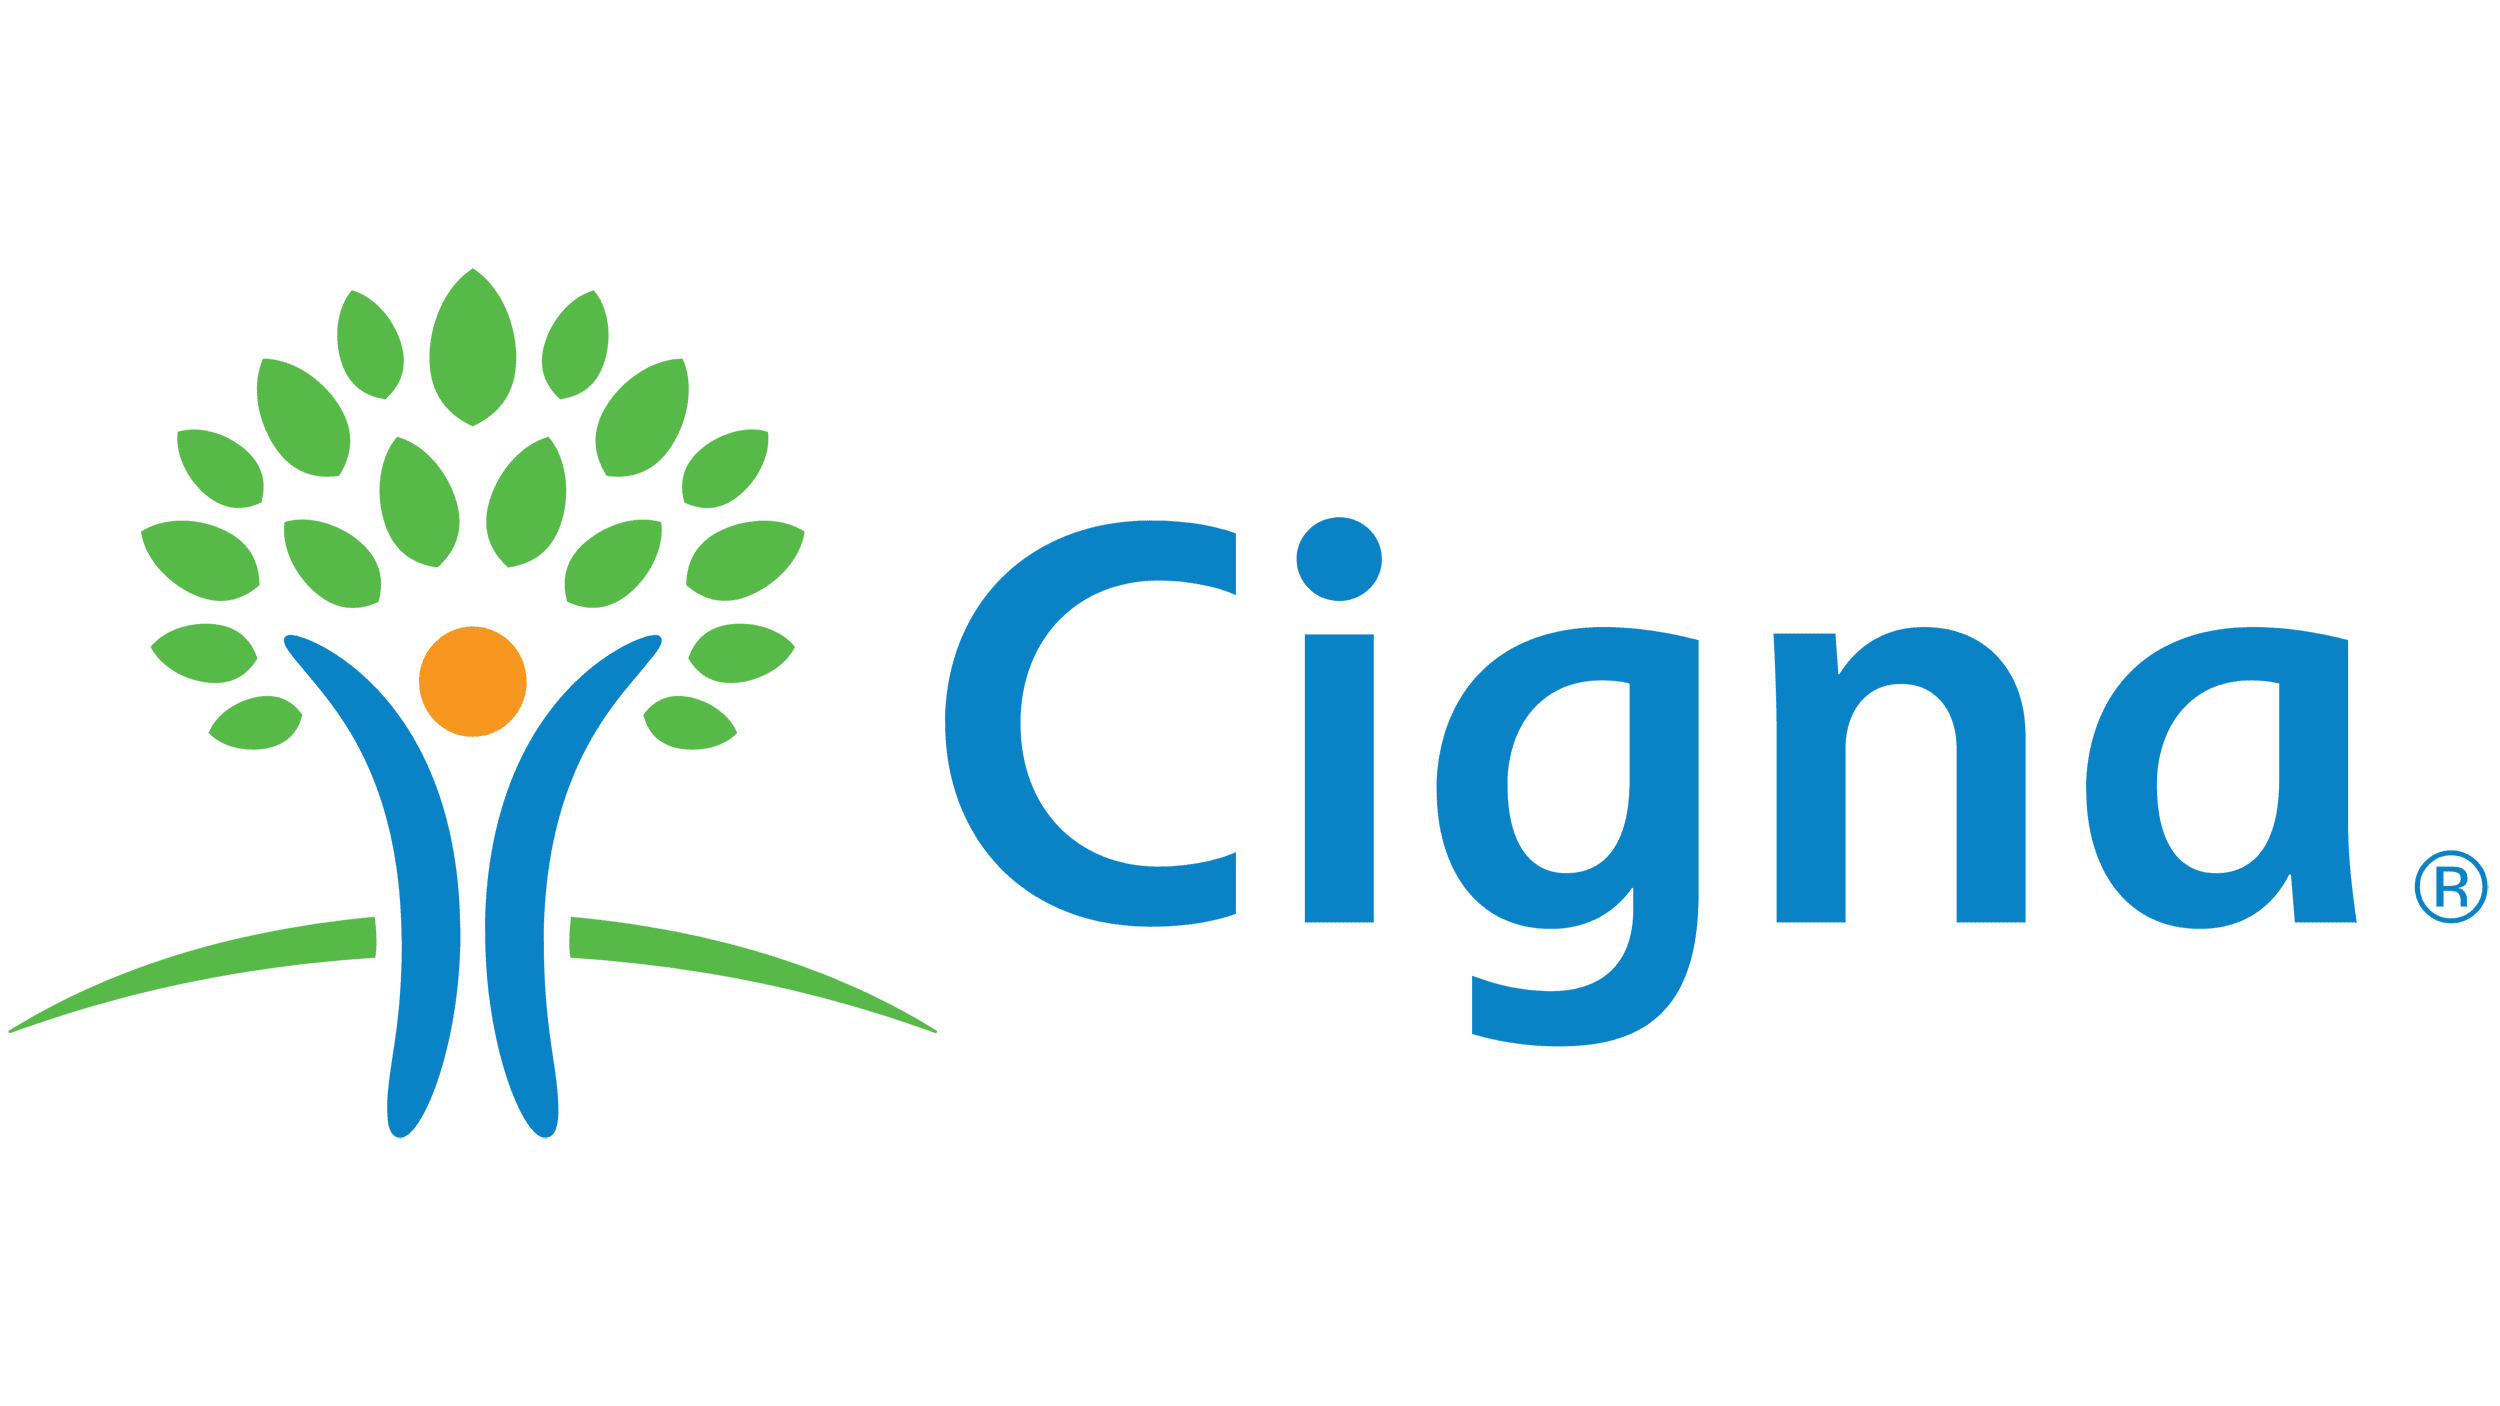 Cigna_logo_PNG1